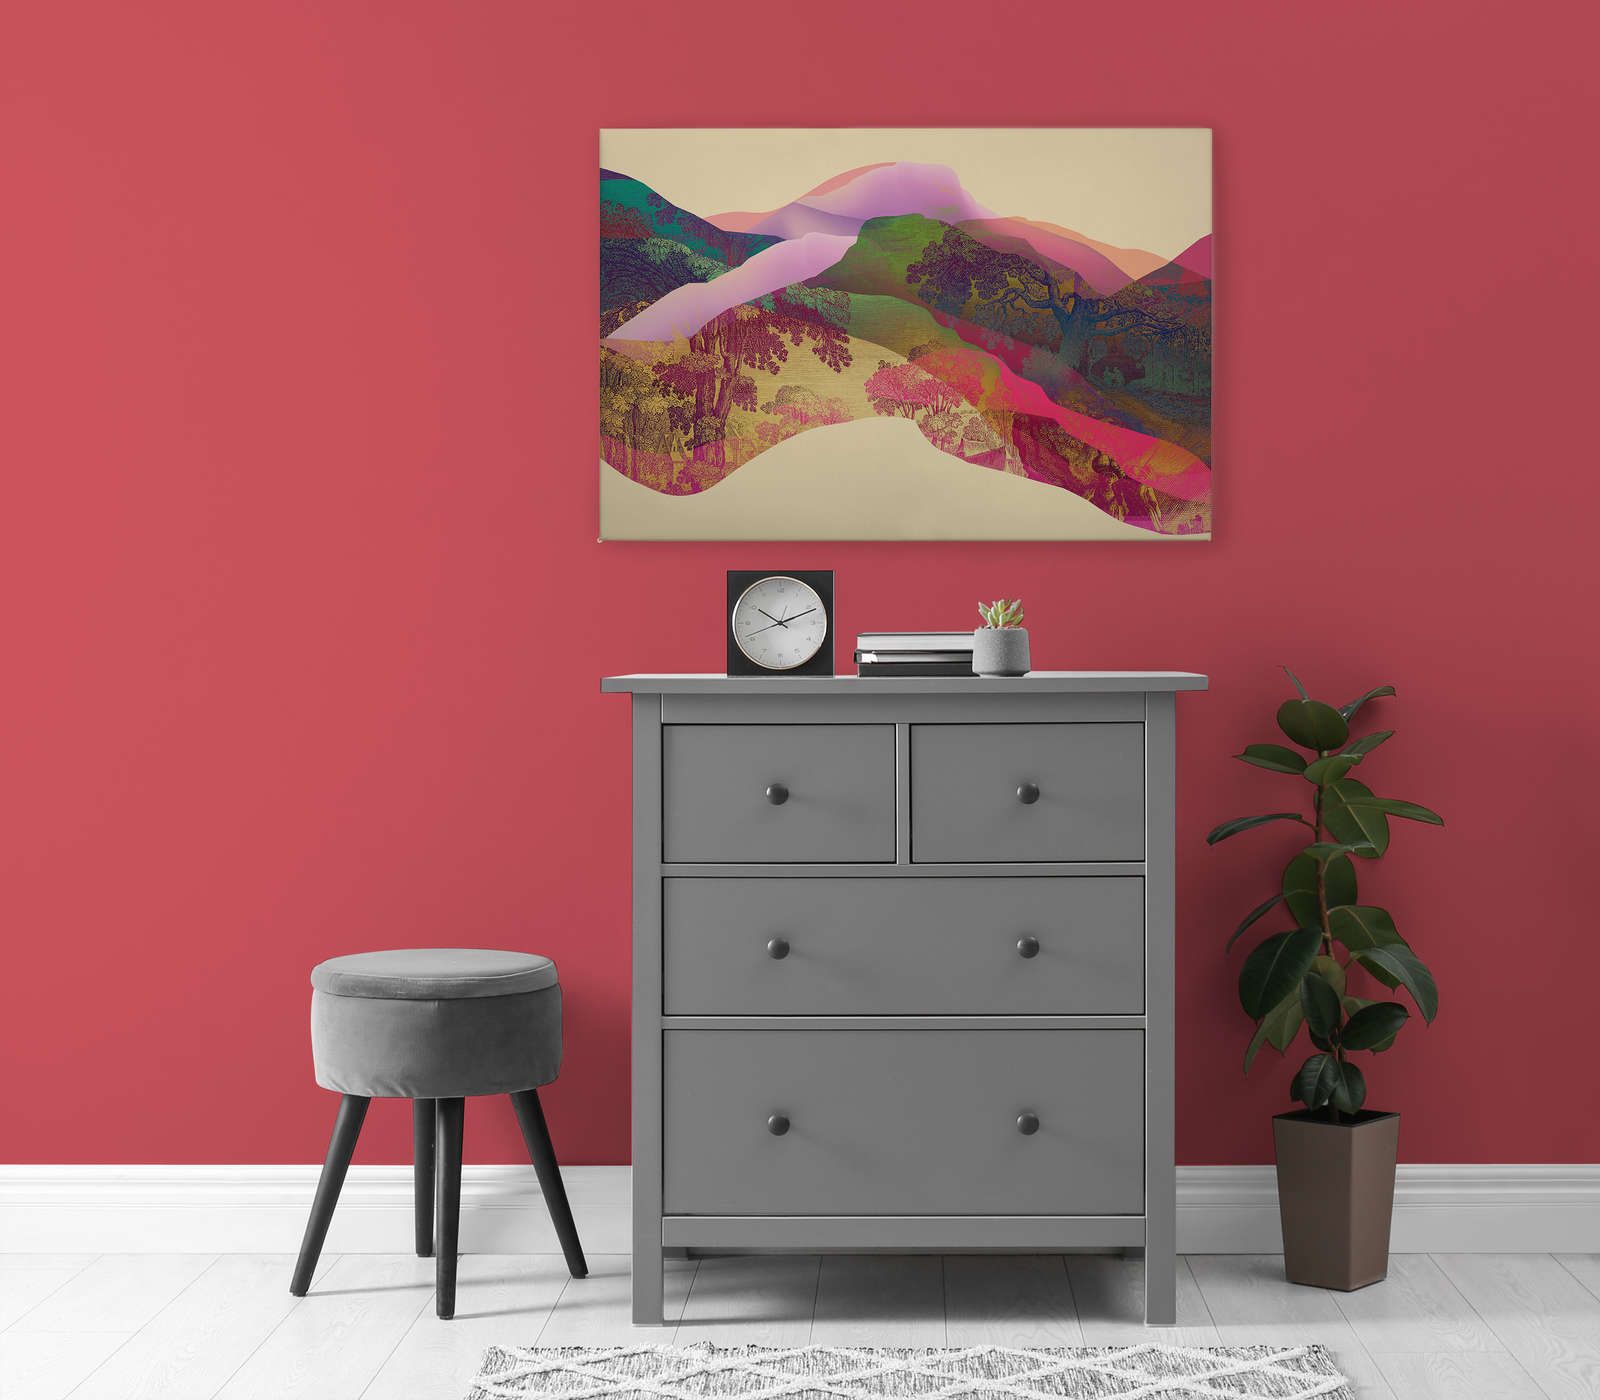             Magic Mountain 2 - Canvas schilderij Berglandschap abstract - 0,90 m x 0,60 m
        